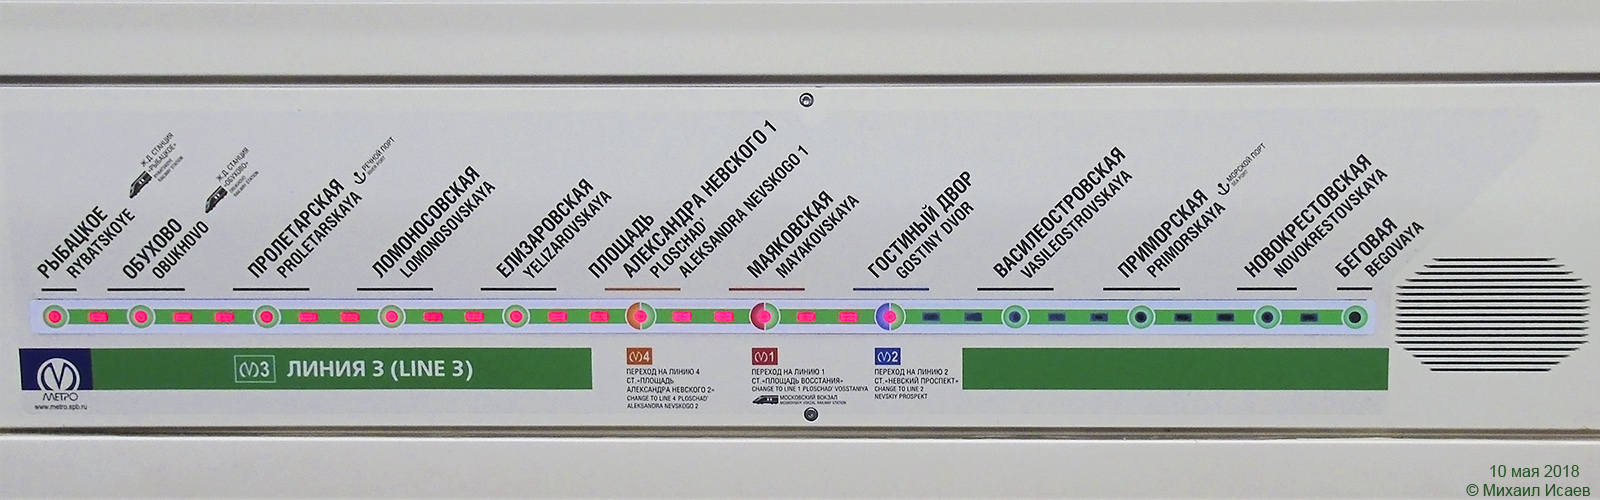 Saint-Petersburg, 81-722 “Yubileyny” # 22022; Saint-Petersburg — Metro — Line 3; Saint-Petersburg — Metro — Maps; Saint-Petersburg — Metro — Vehicles — Type 81-722/723/724 "Yubileyniy"